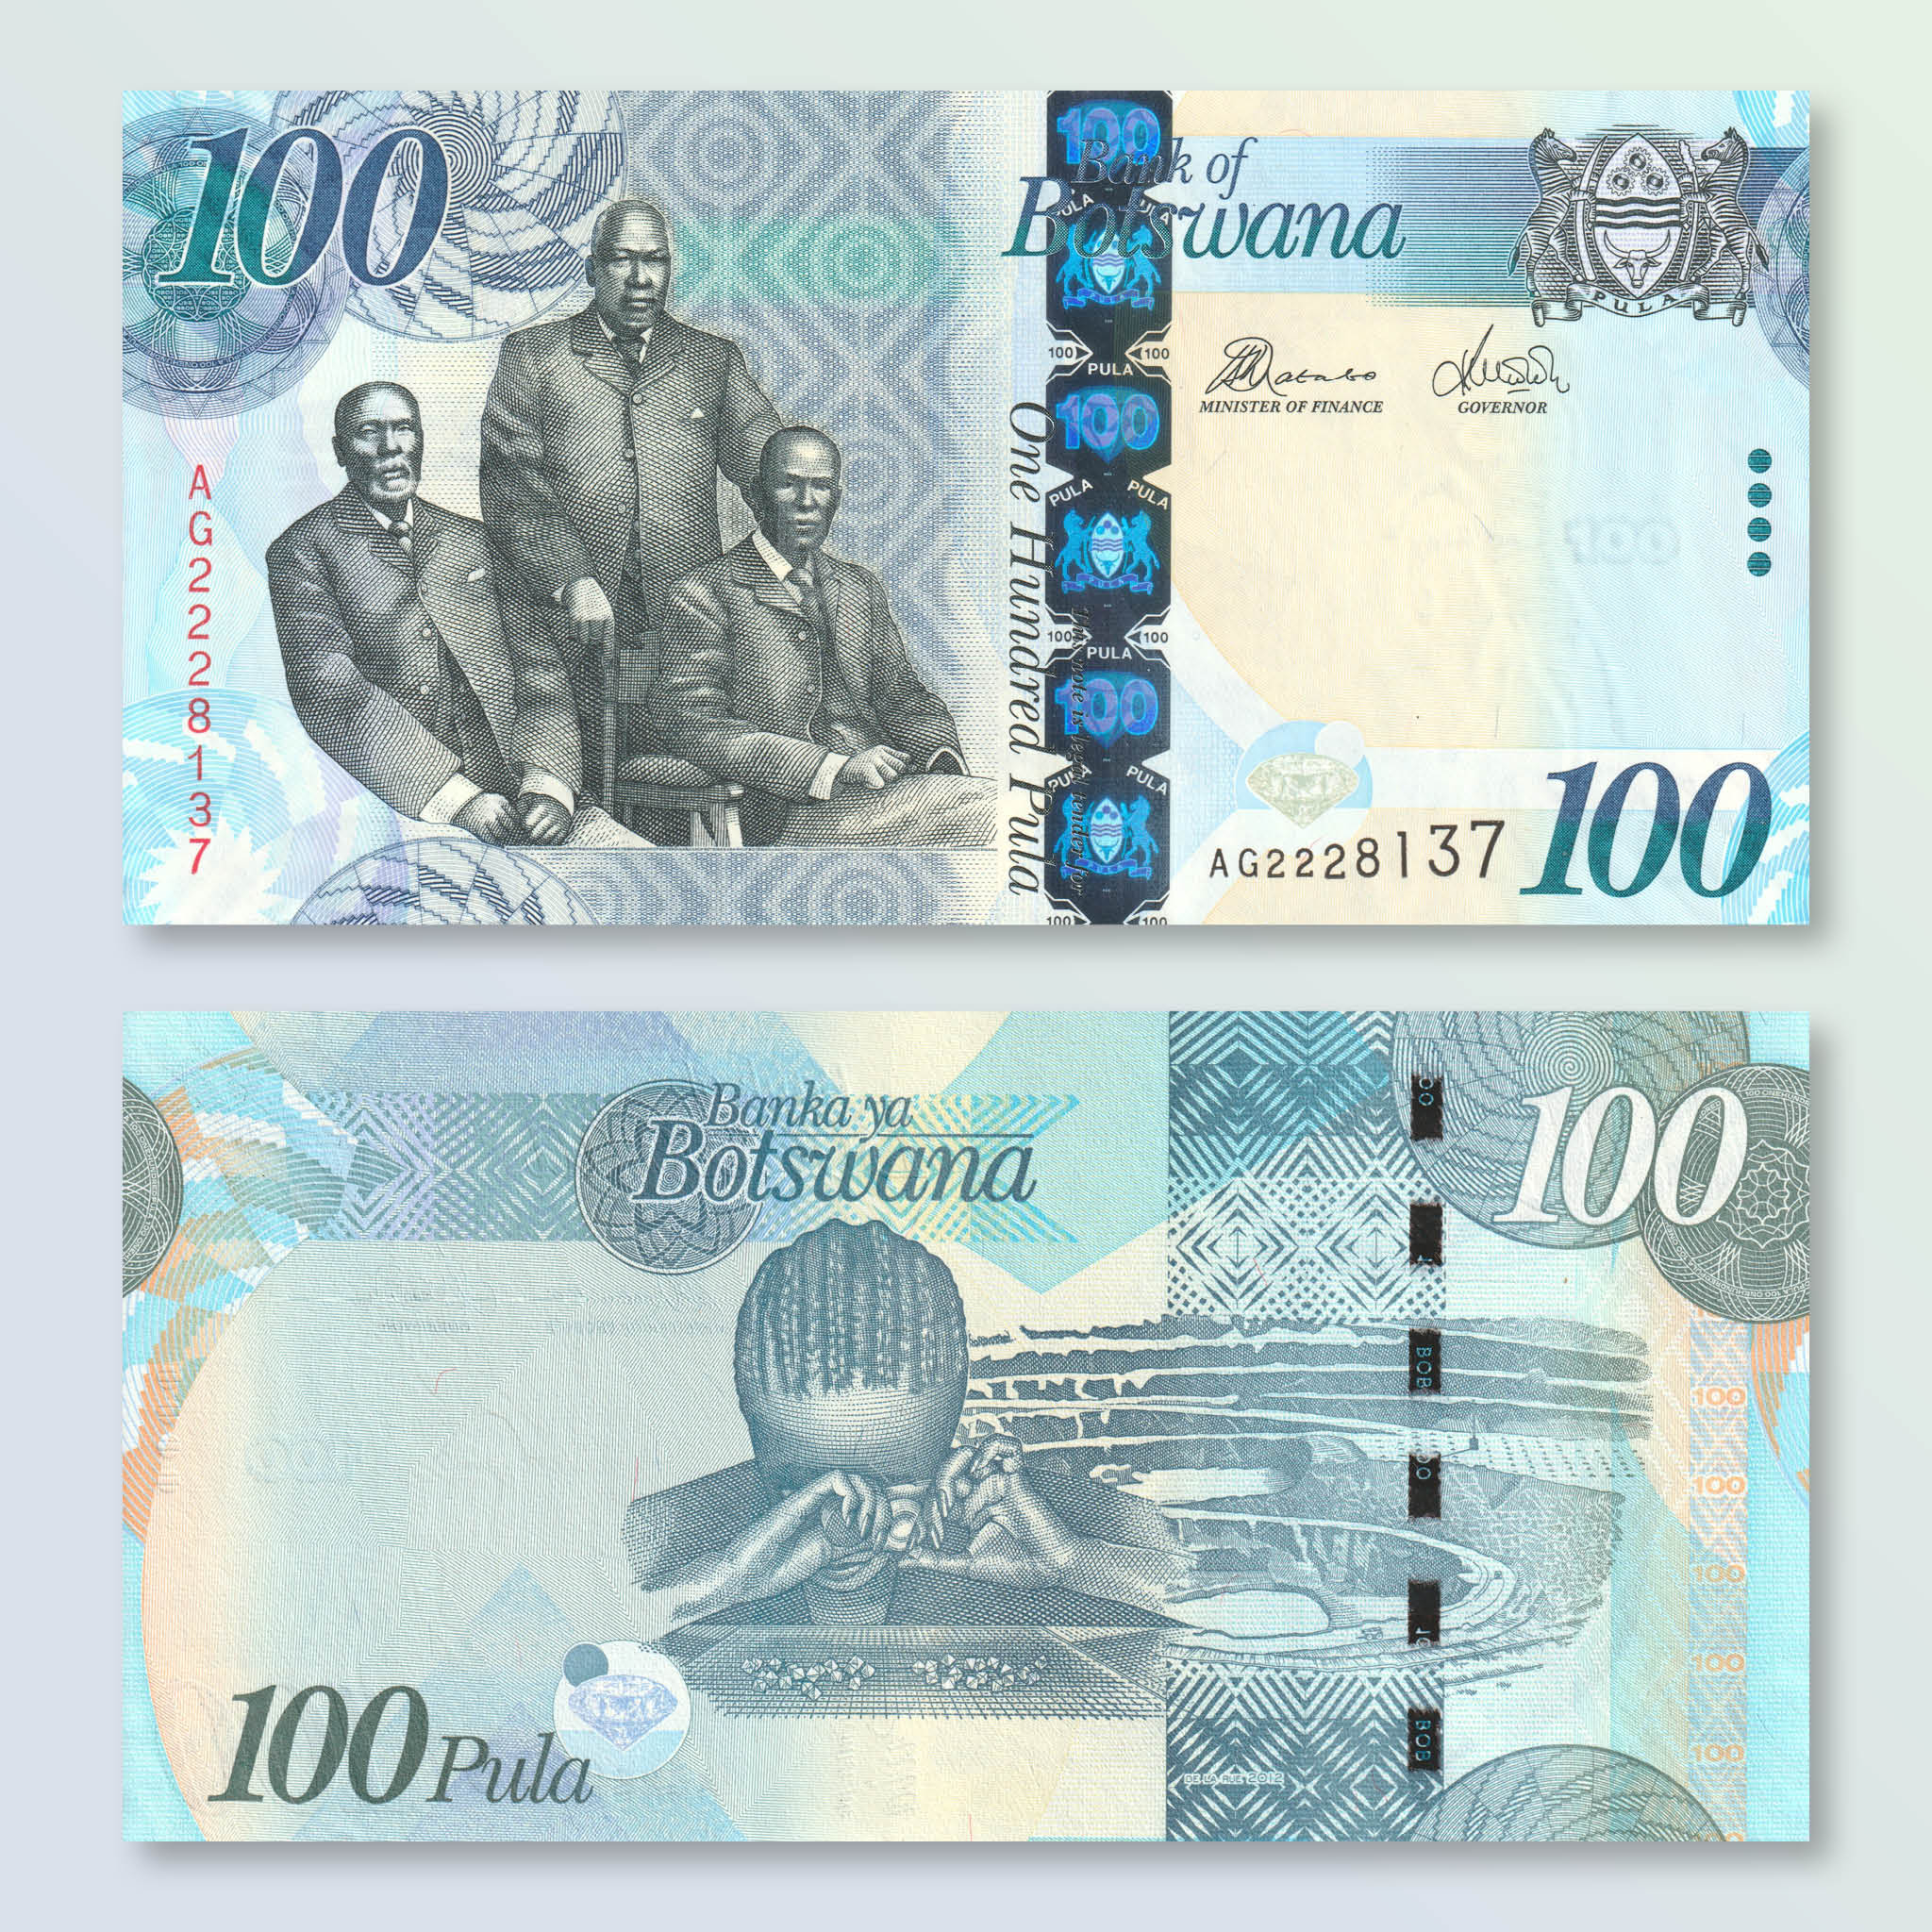 Botswana 100 Pula, 2012, B127c, P33c, UNC - Robert's World Money - World Banknotes